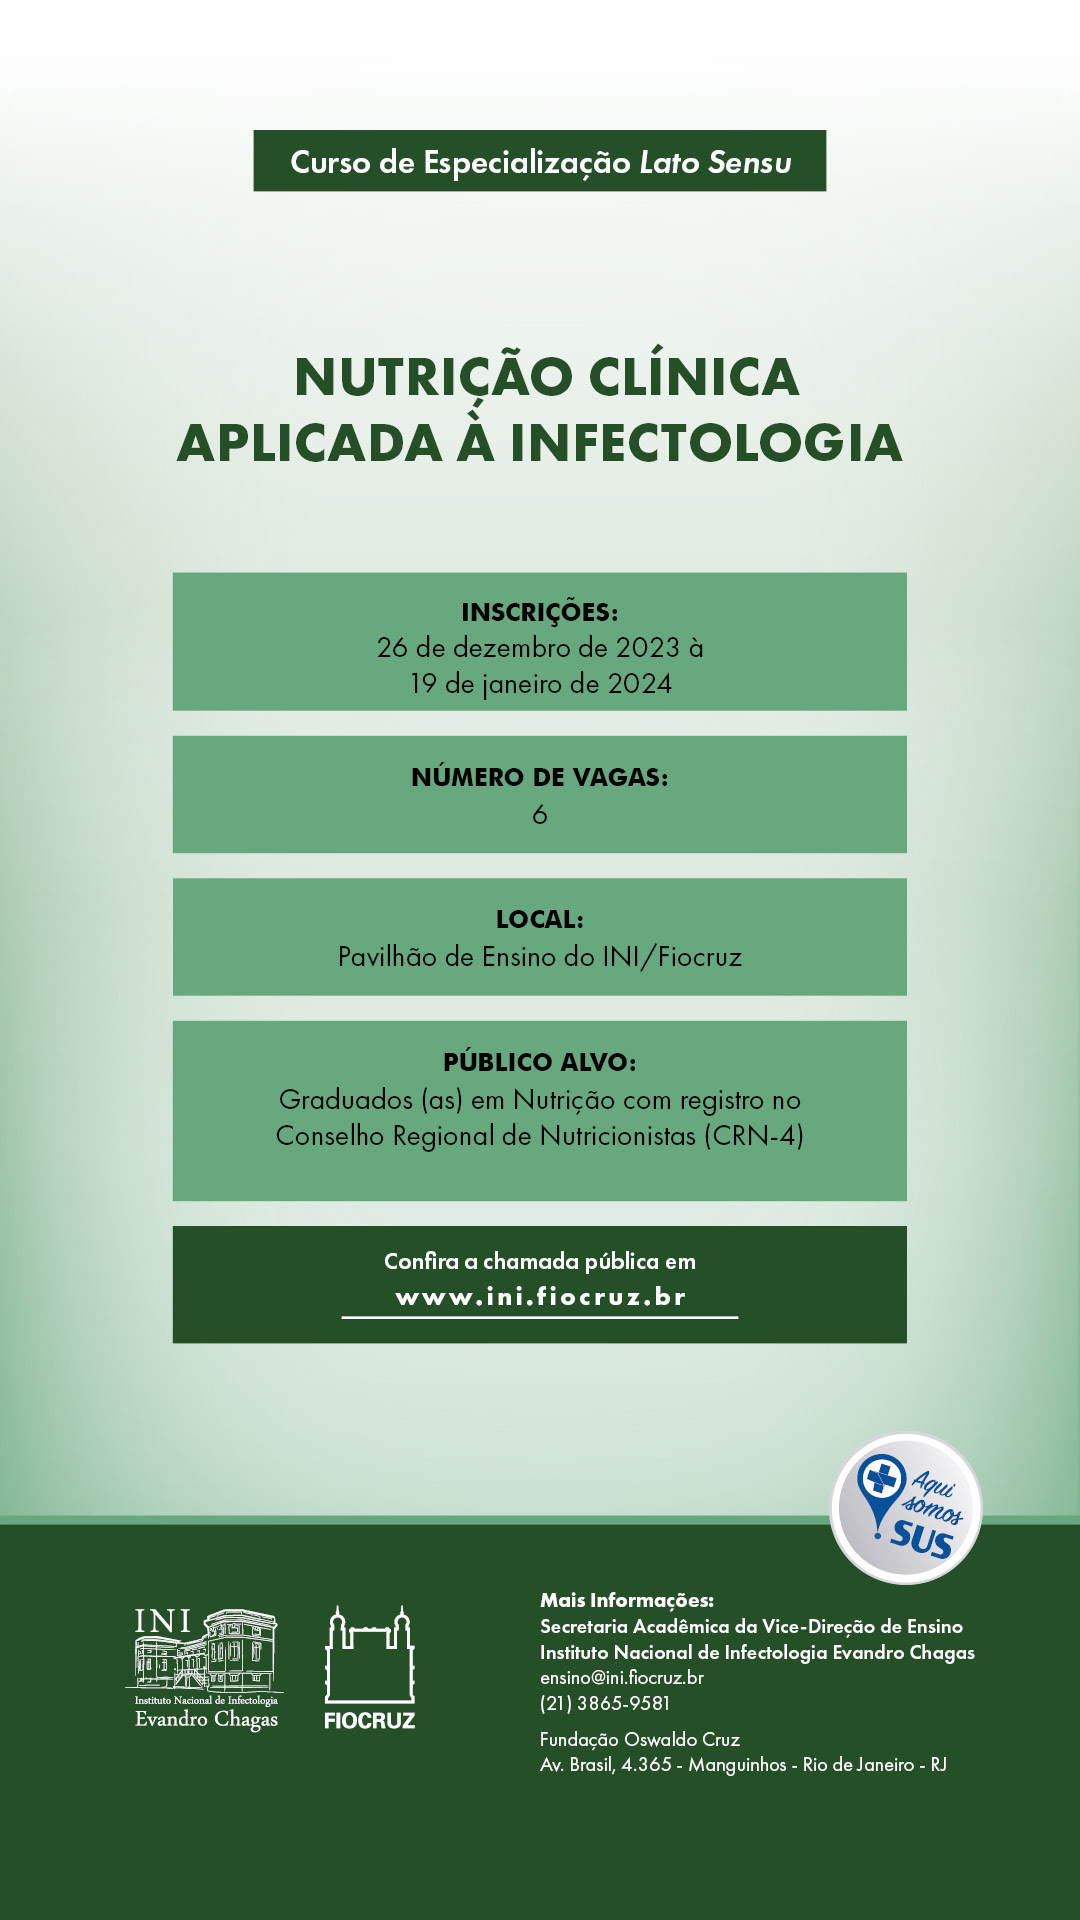 Imagem de um cartaz com o texto: inscrições até o dia 19 de janeiro, seis vagas, público-alvo: graduados em Nutrição com registro no Conselho Regional de Nutricionistas (CRN-4).